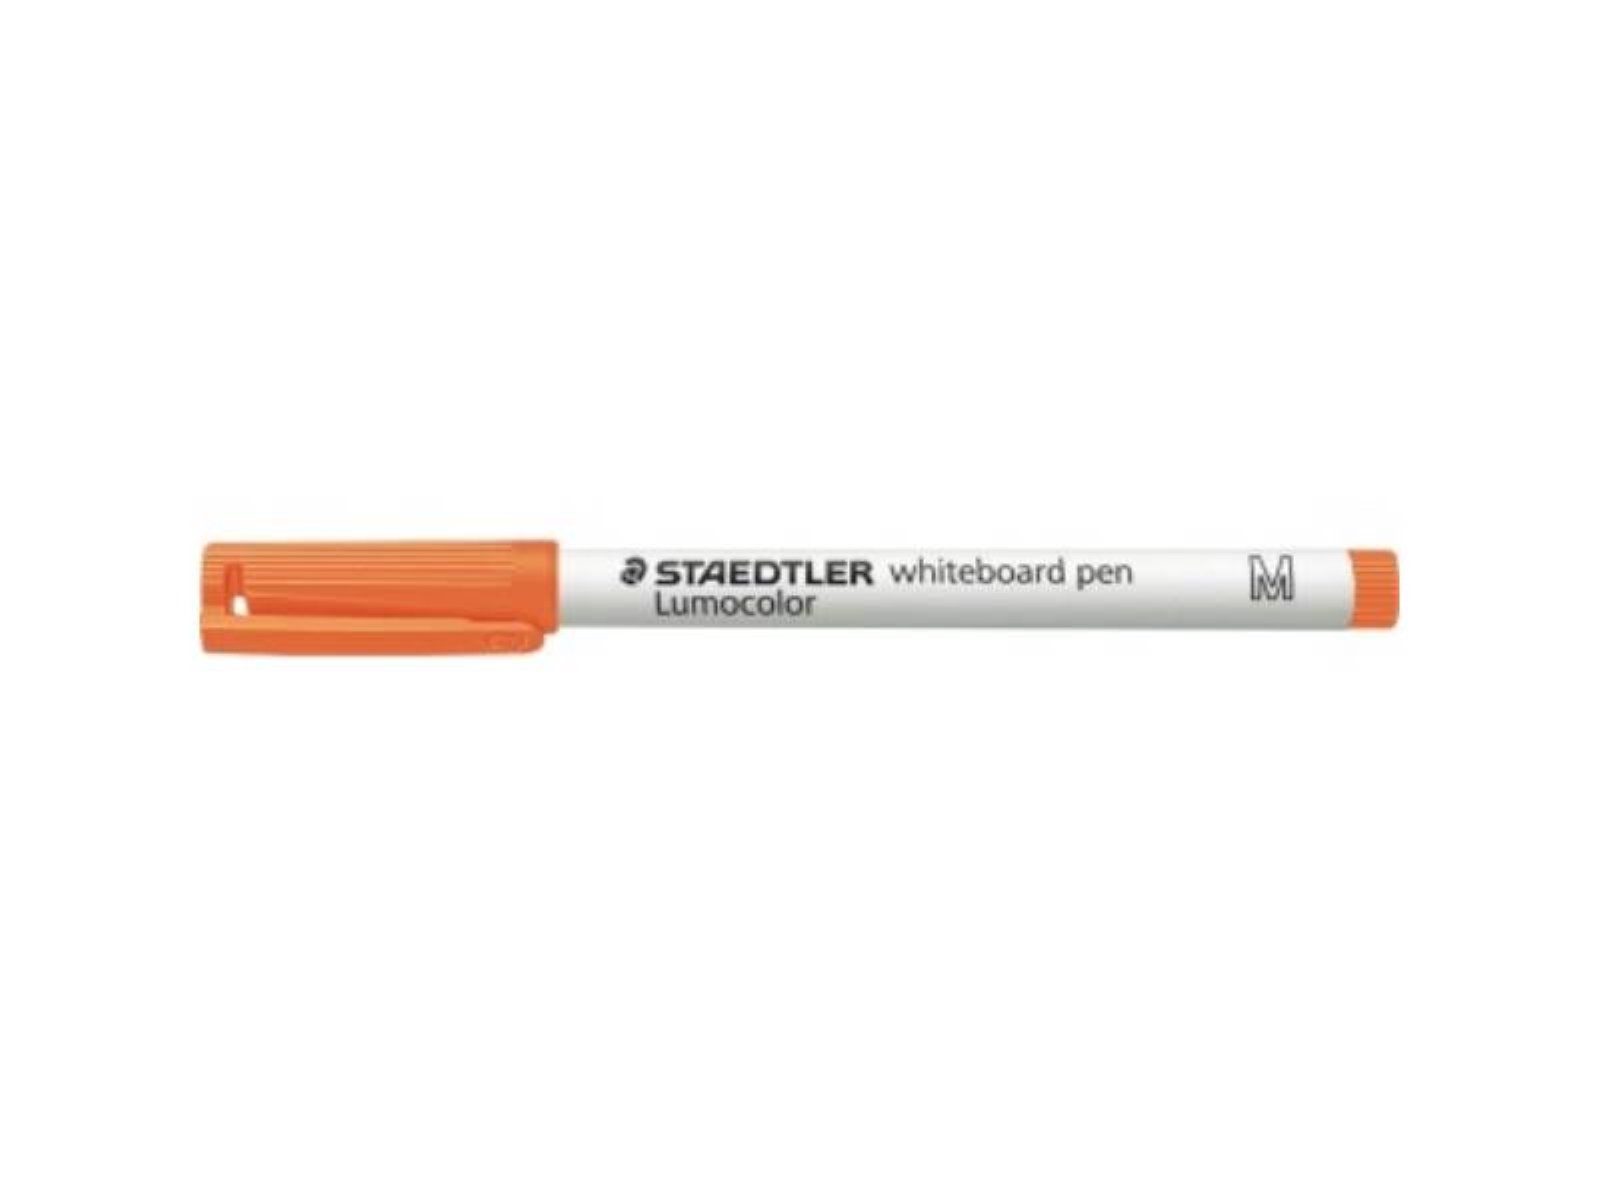 STAEDTLER Marker STAEDTLER 301-4 STAEDTLER® oran 301 Whiteboardmarker 1mm Lumocolor®